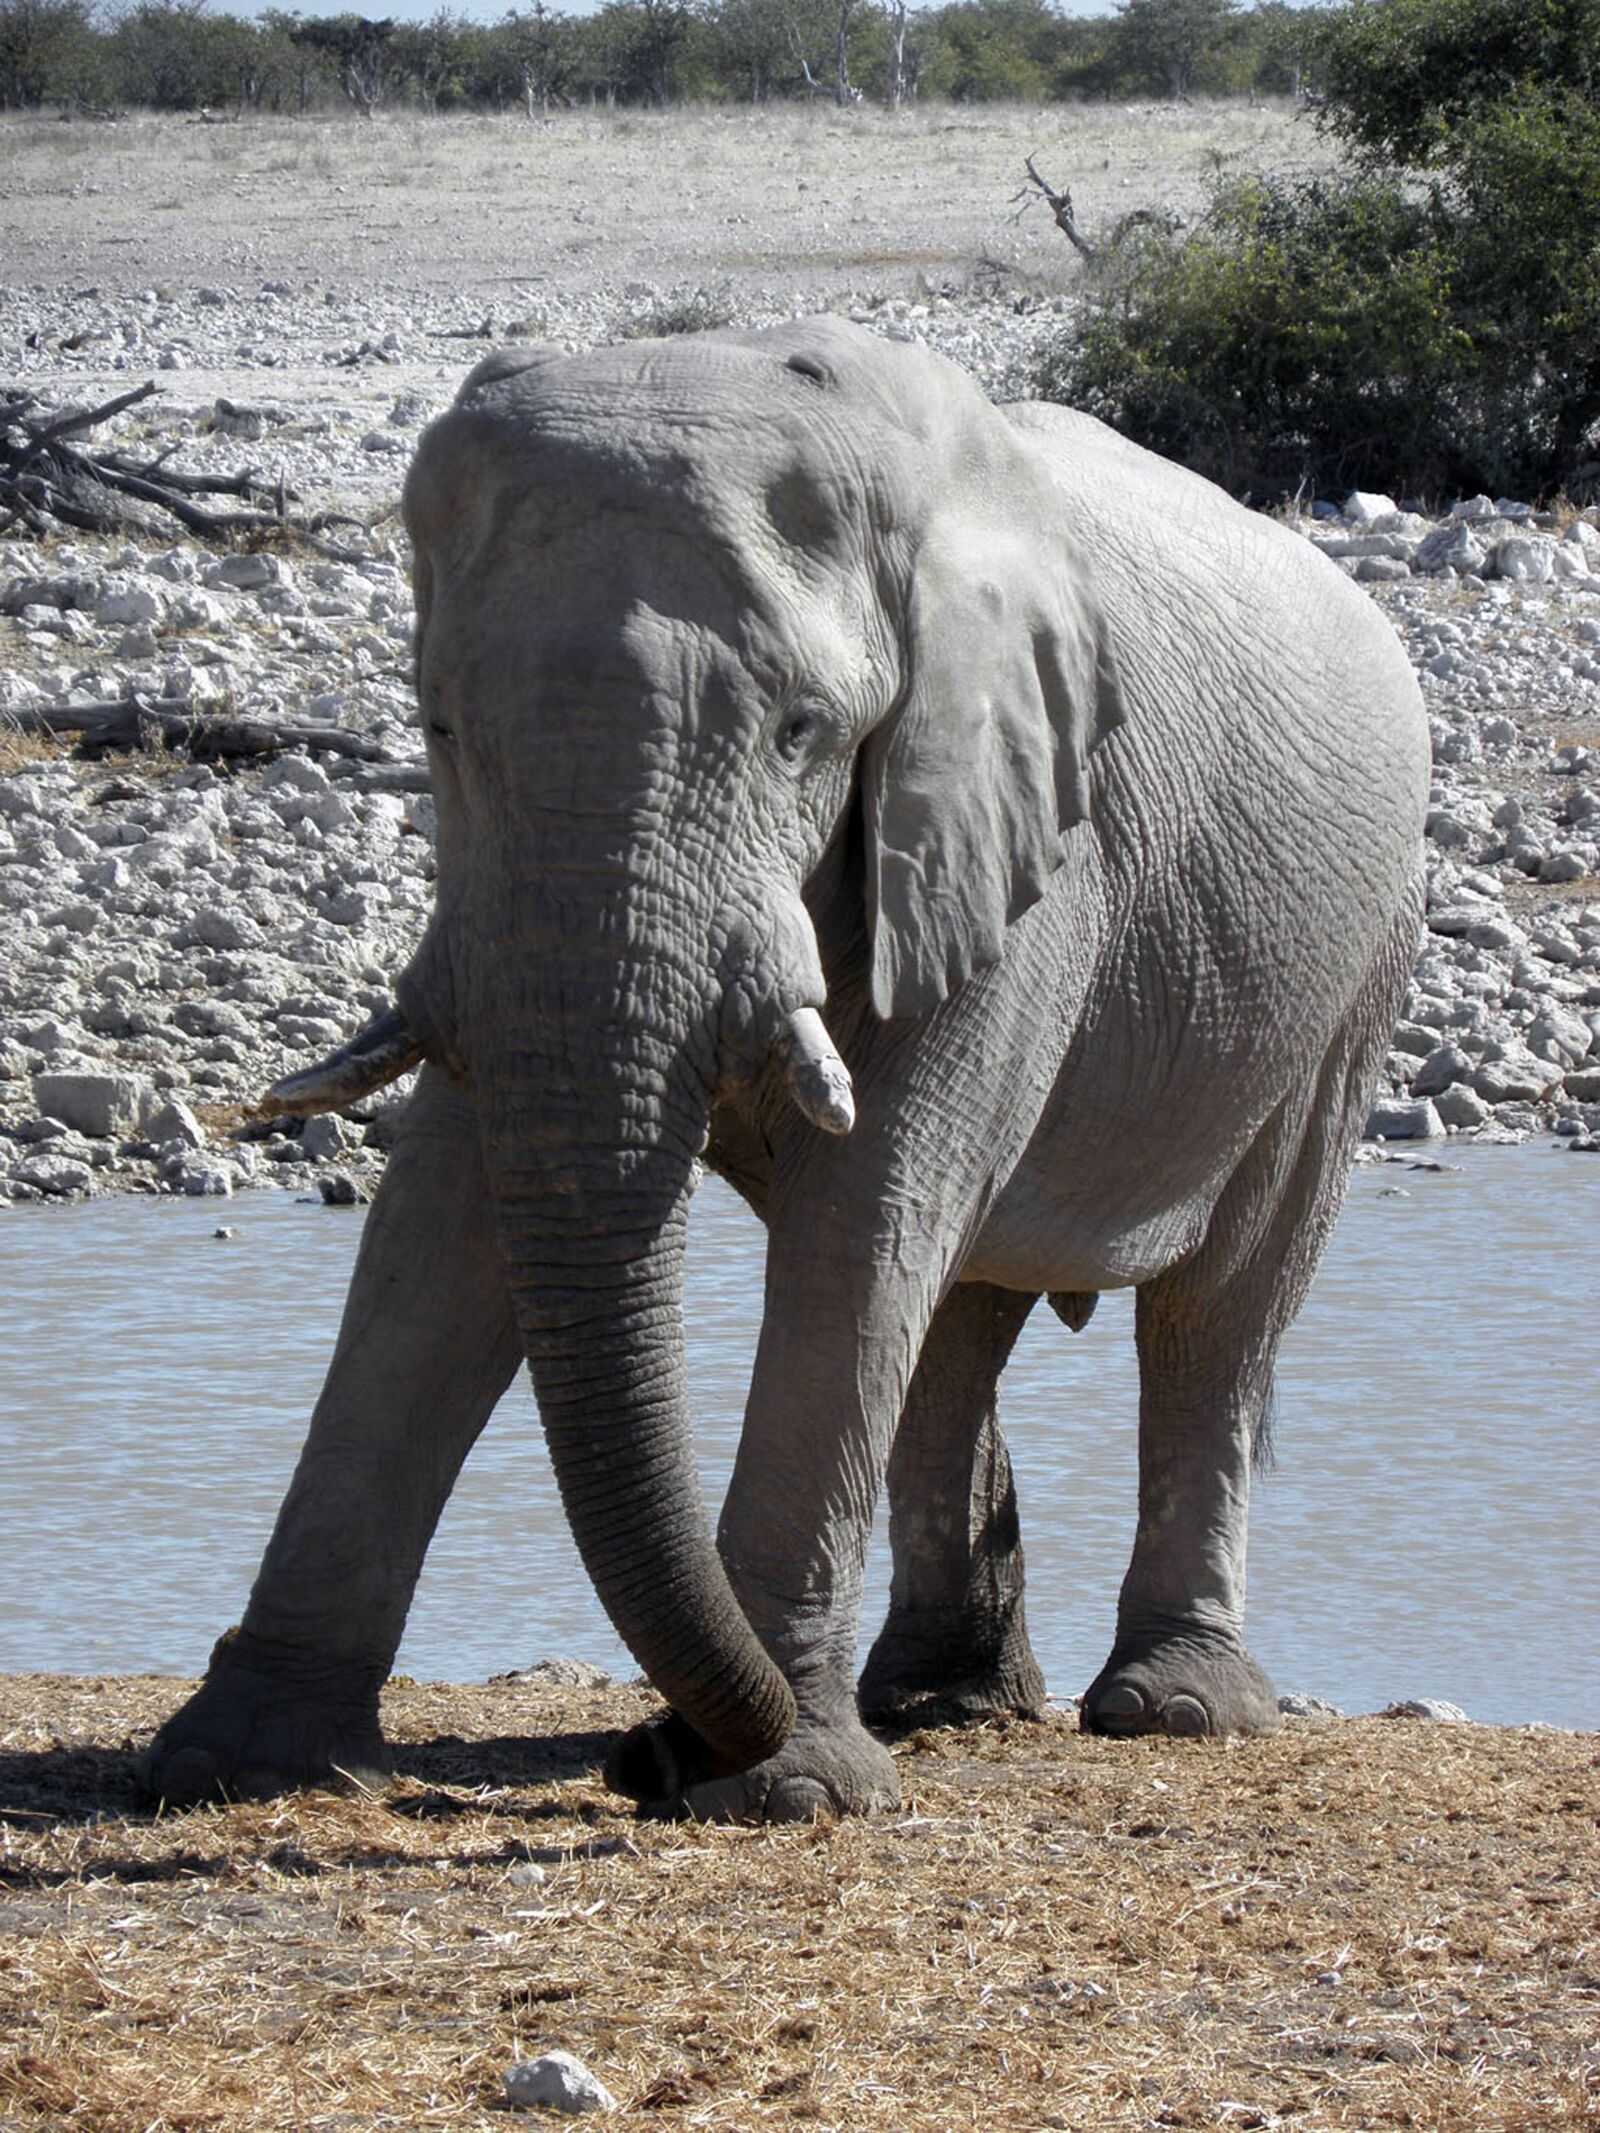 Olympus SP590UZ sample photo. Elephant, animal, namibia photography